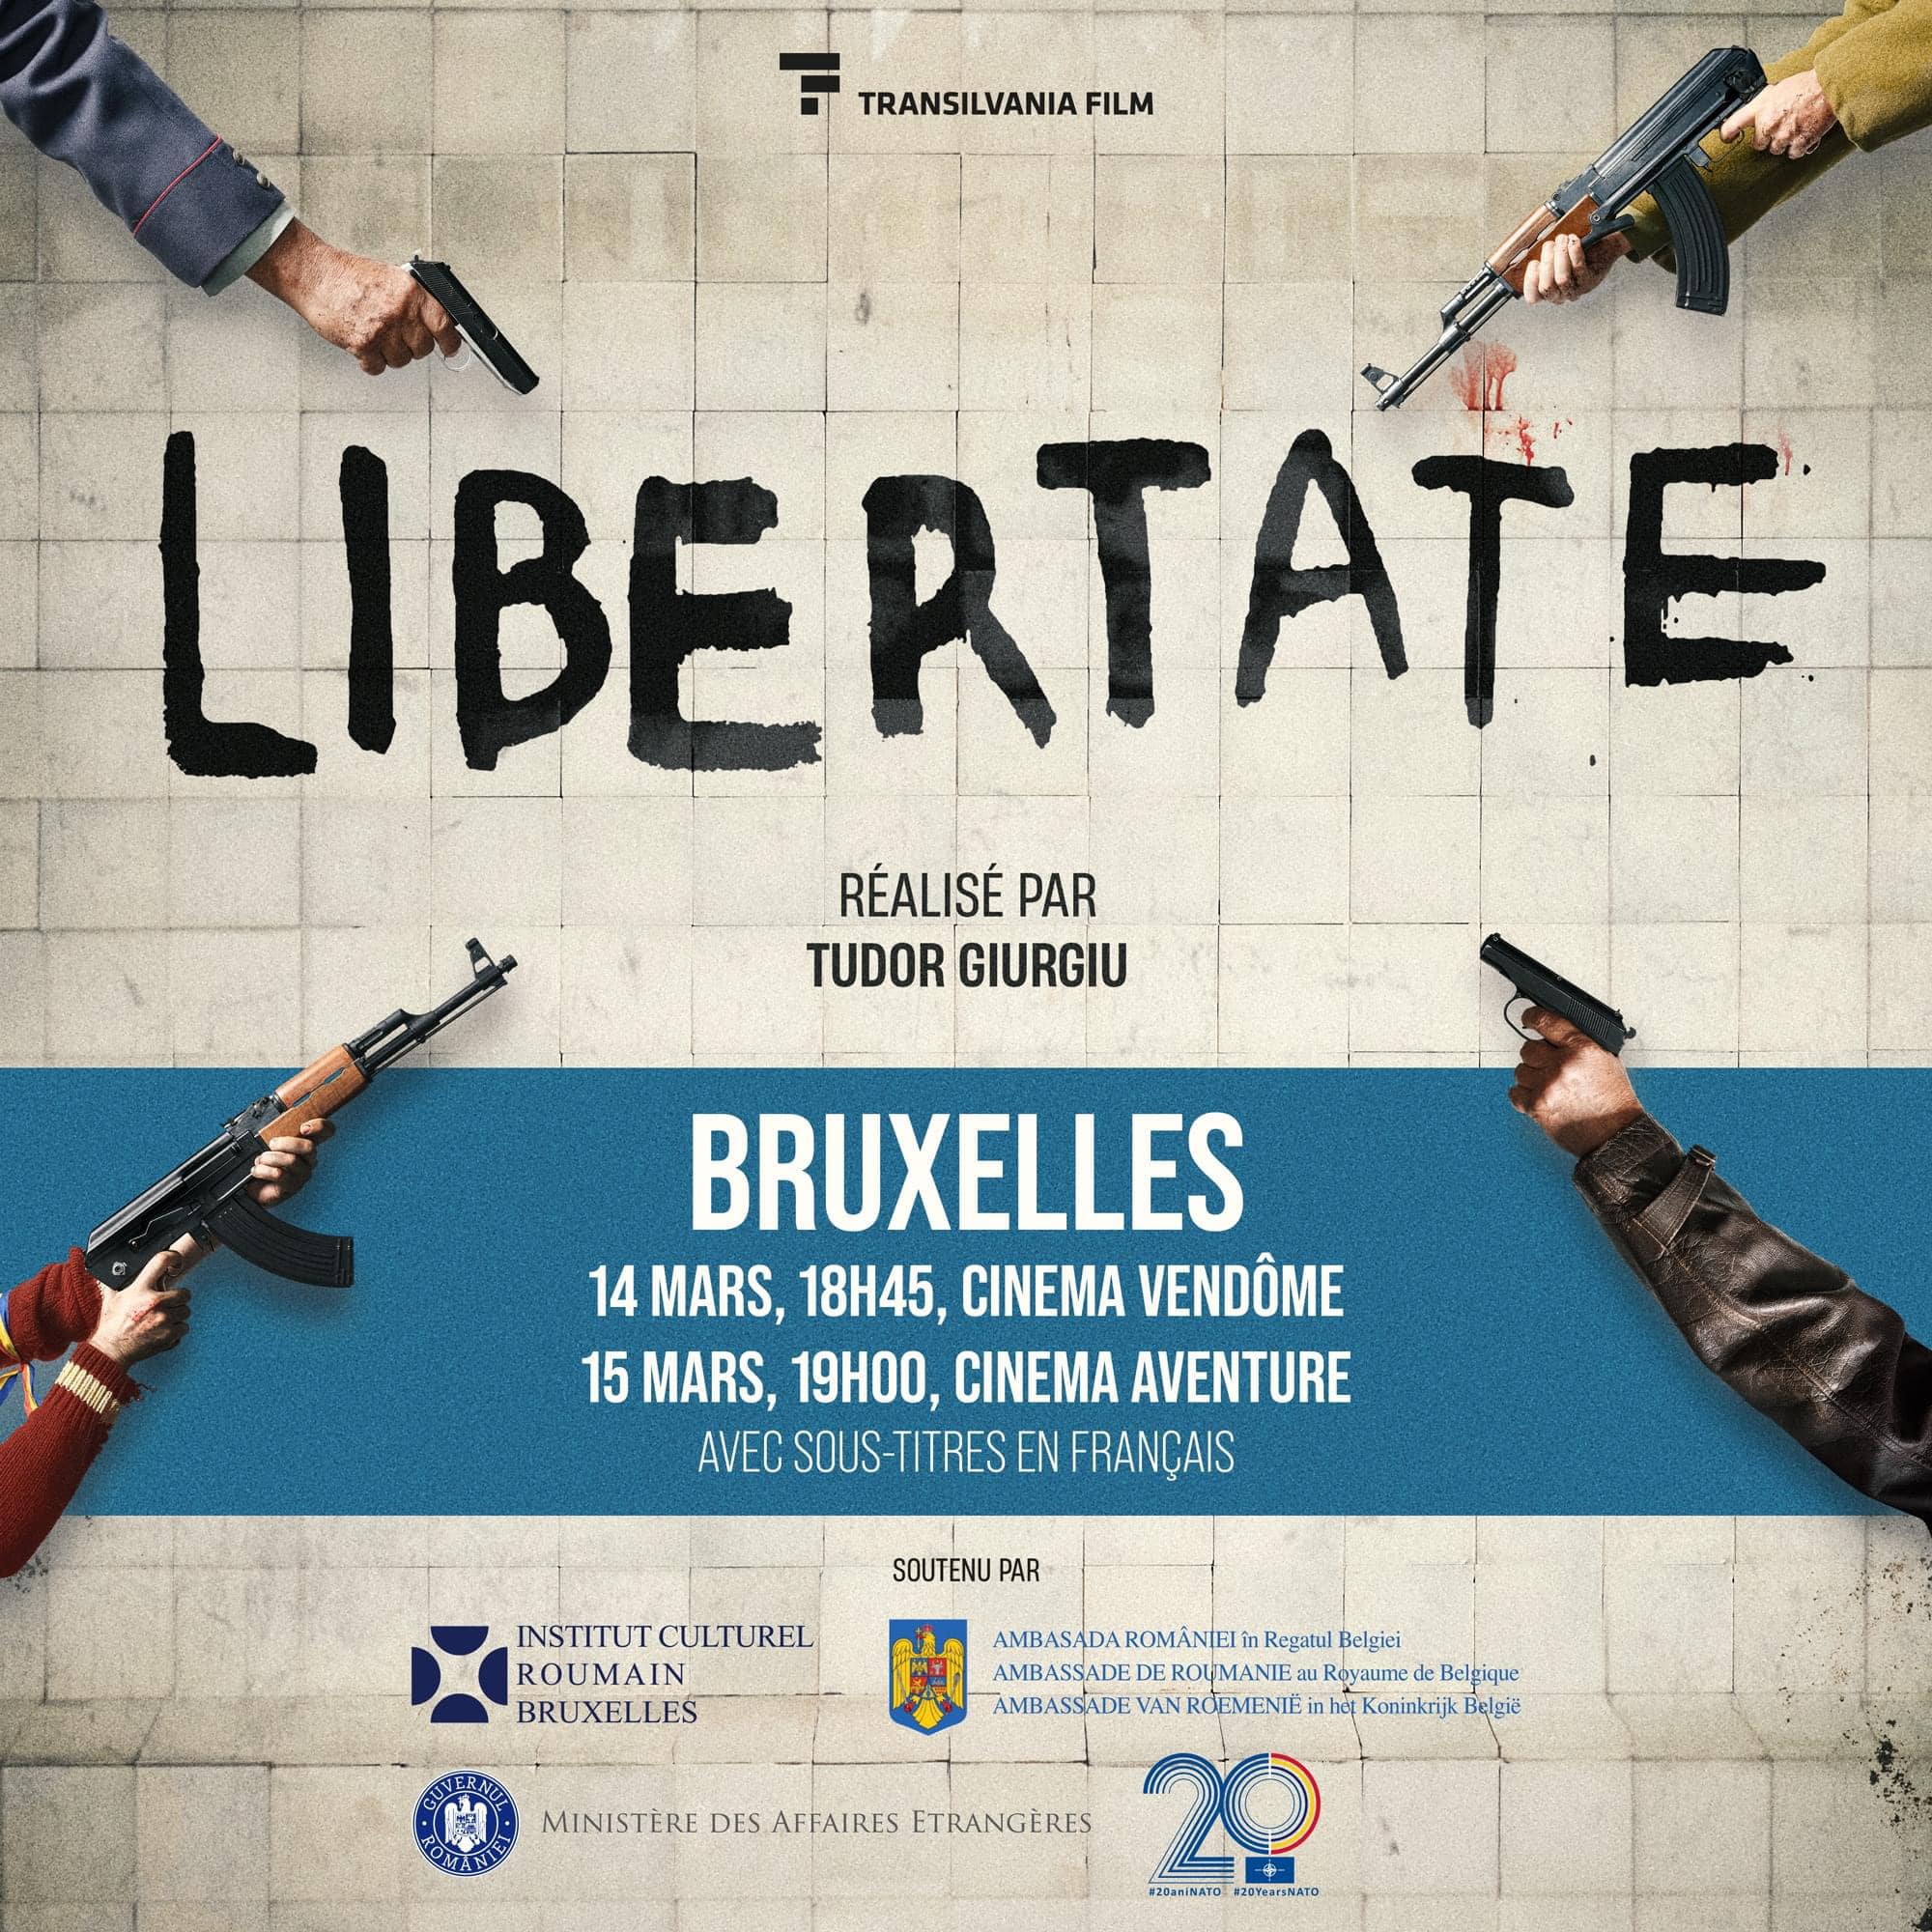 Tudor Giurgiu : Dacã aveti prieteni la Bruxelles, chemati-i sã vadã „Libertate” Joi 14 martie la cinema Vendome